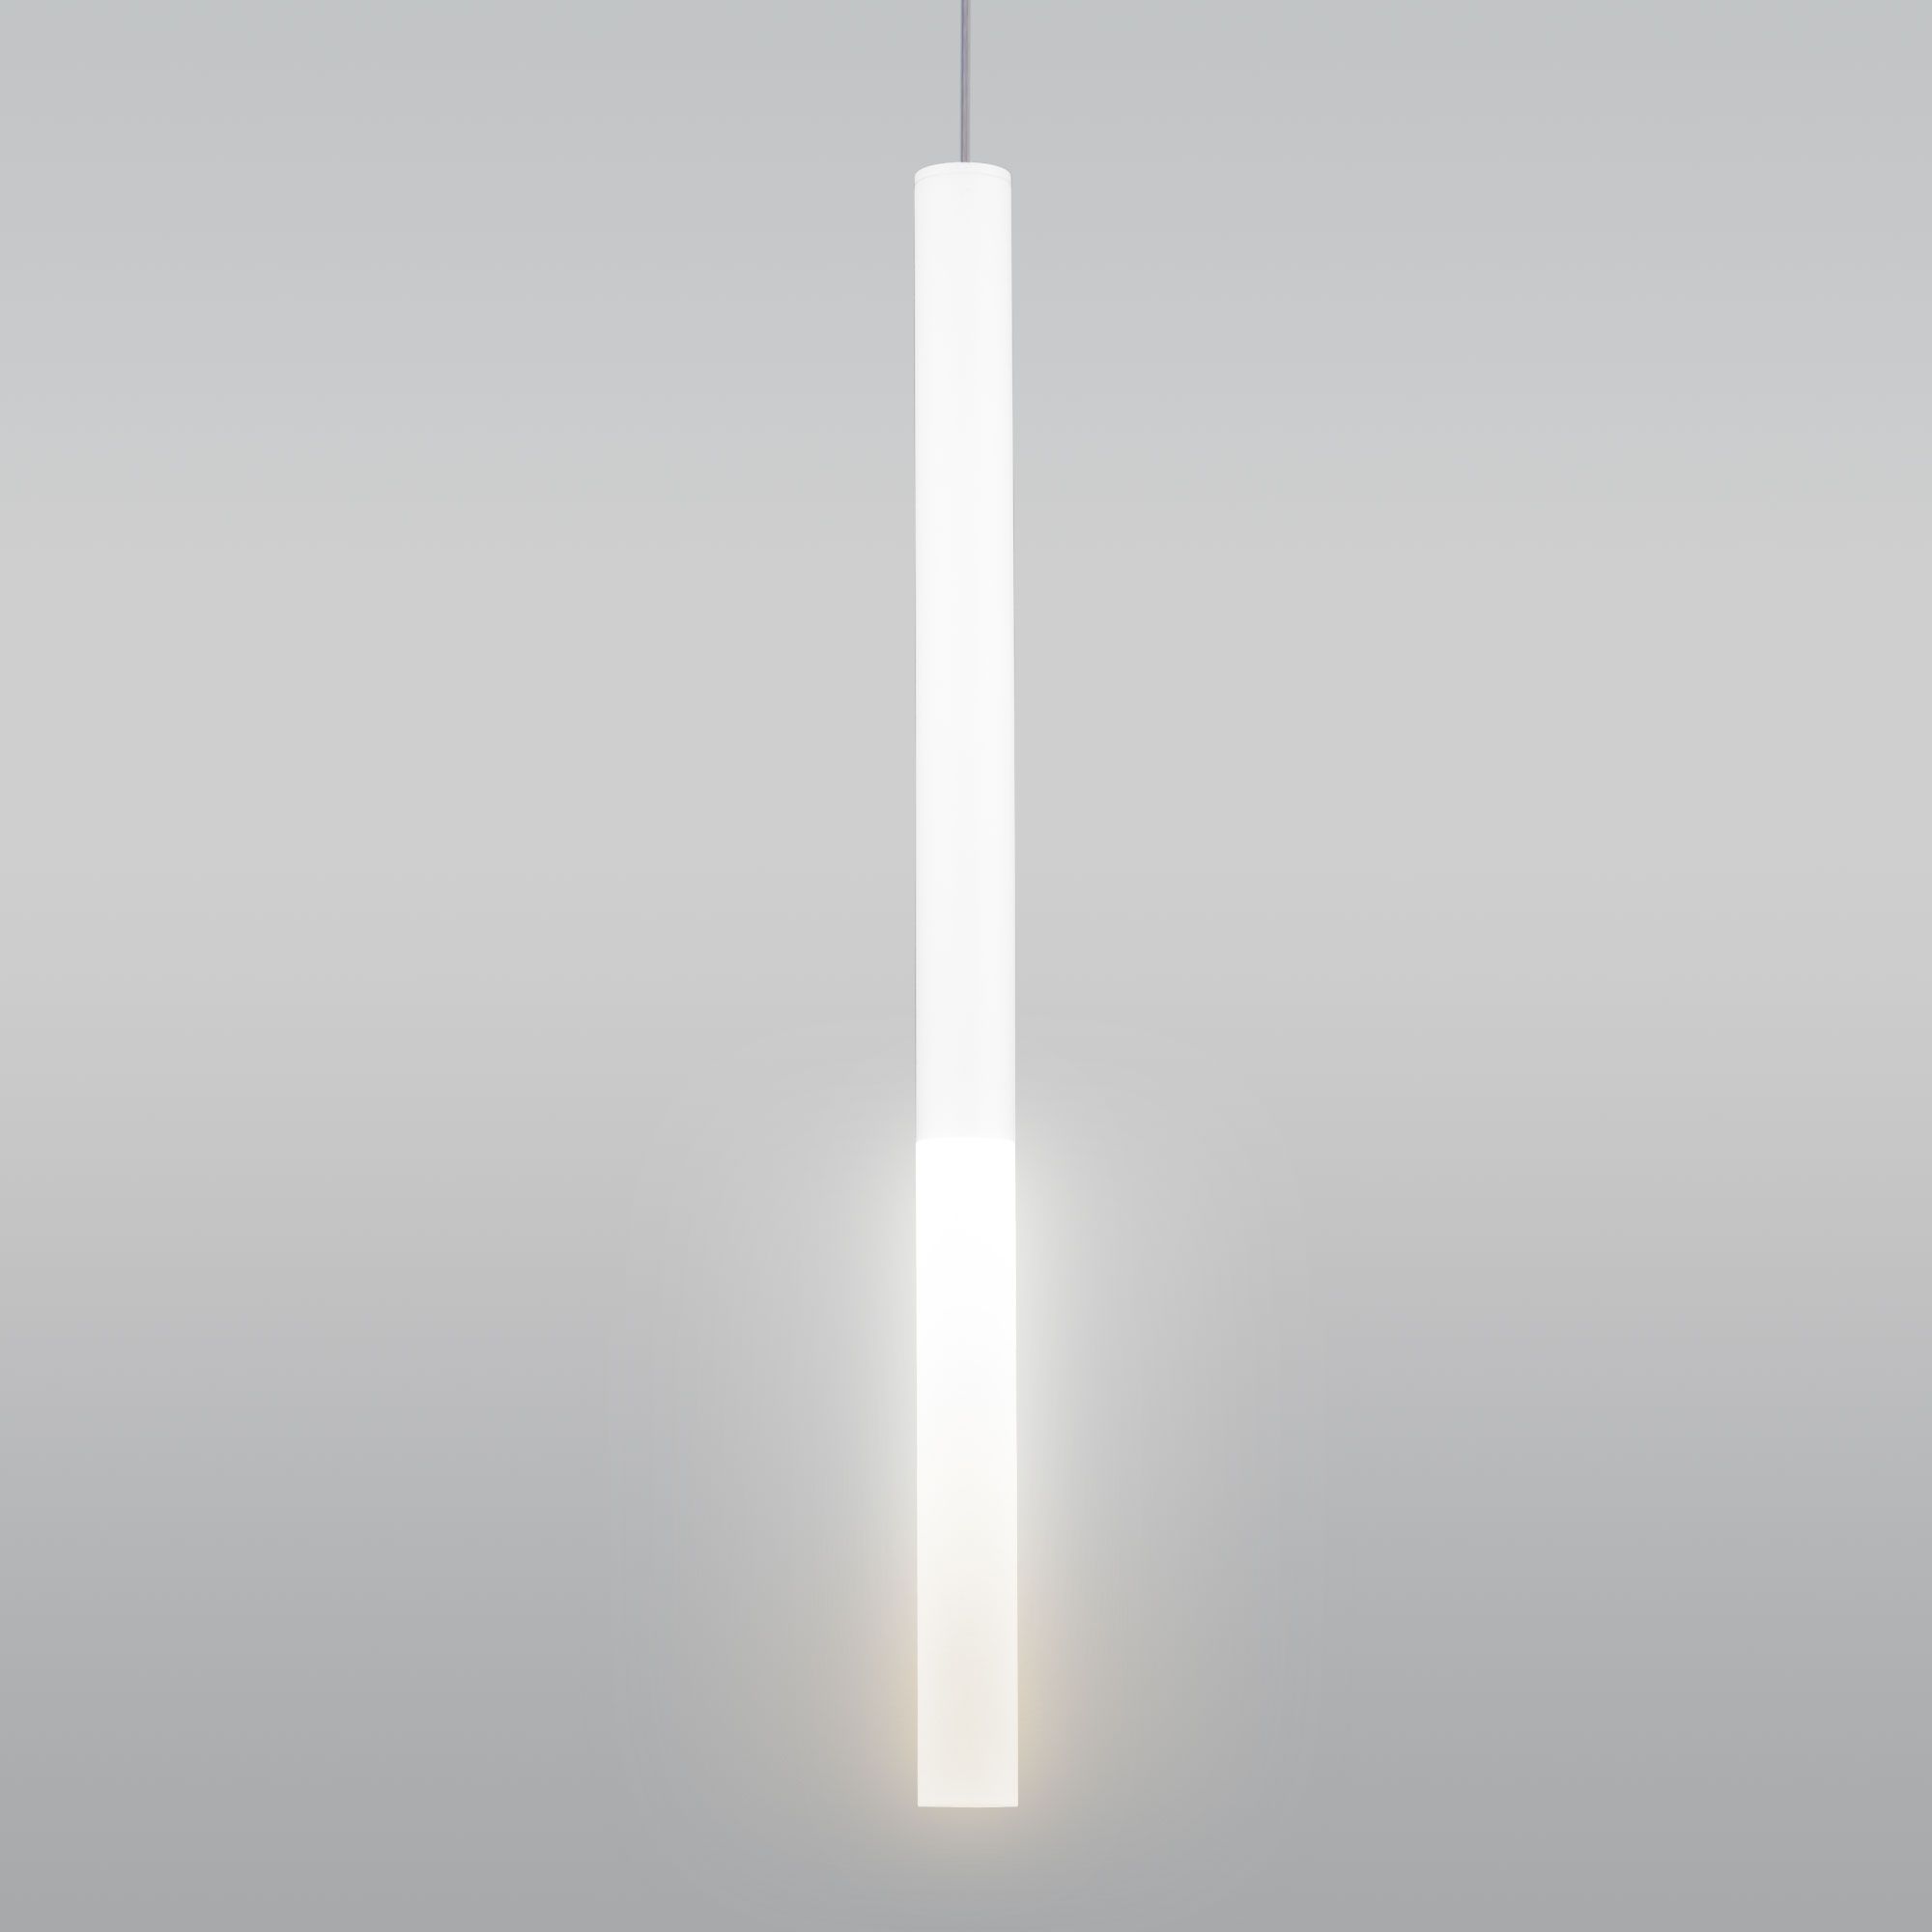 Накладной потолочный  светодиодный светильник DLR040 4W 4200K белый матовый